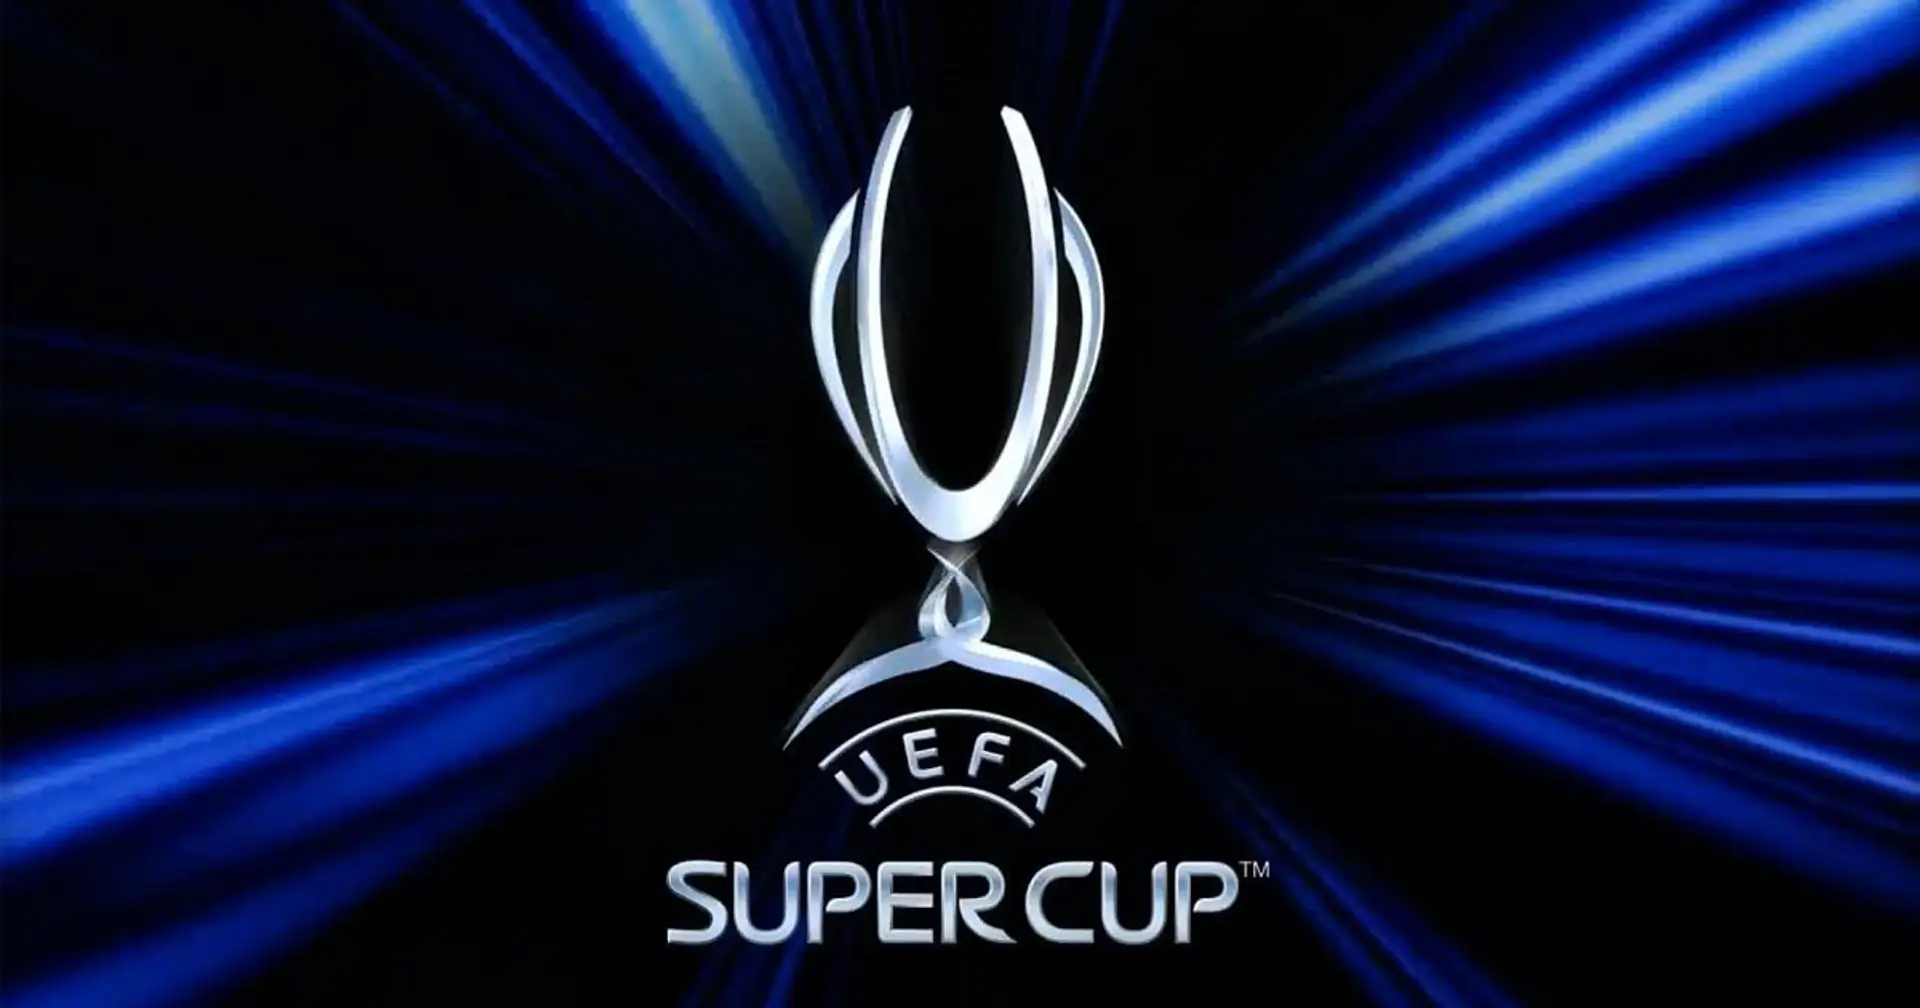 La Uefa ha ufficializzato data e sede della Supercoppa Europea: salgono le possibilità di rivedere i tifosi allo stadio